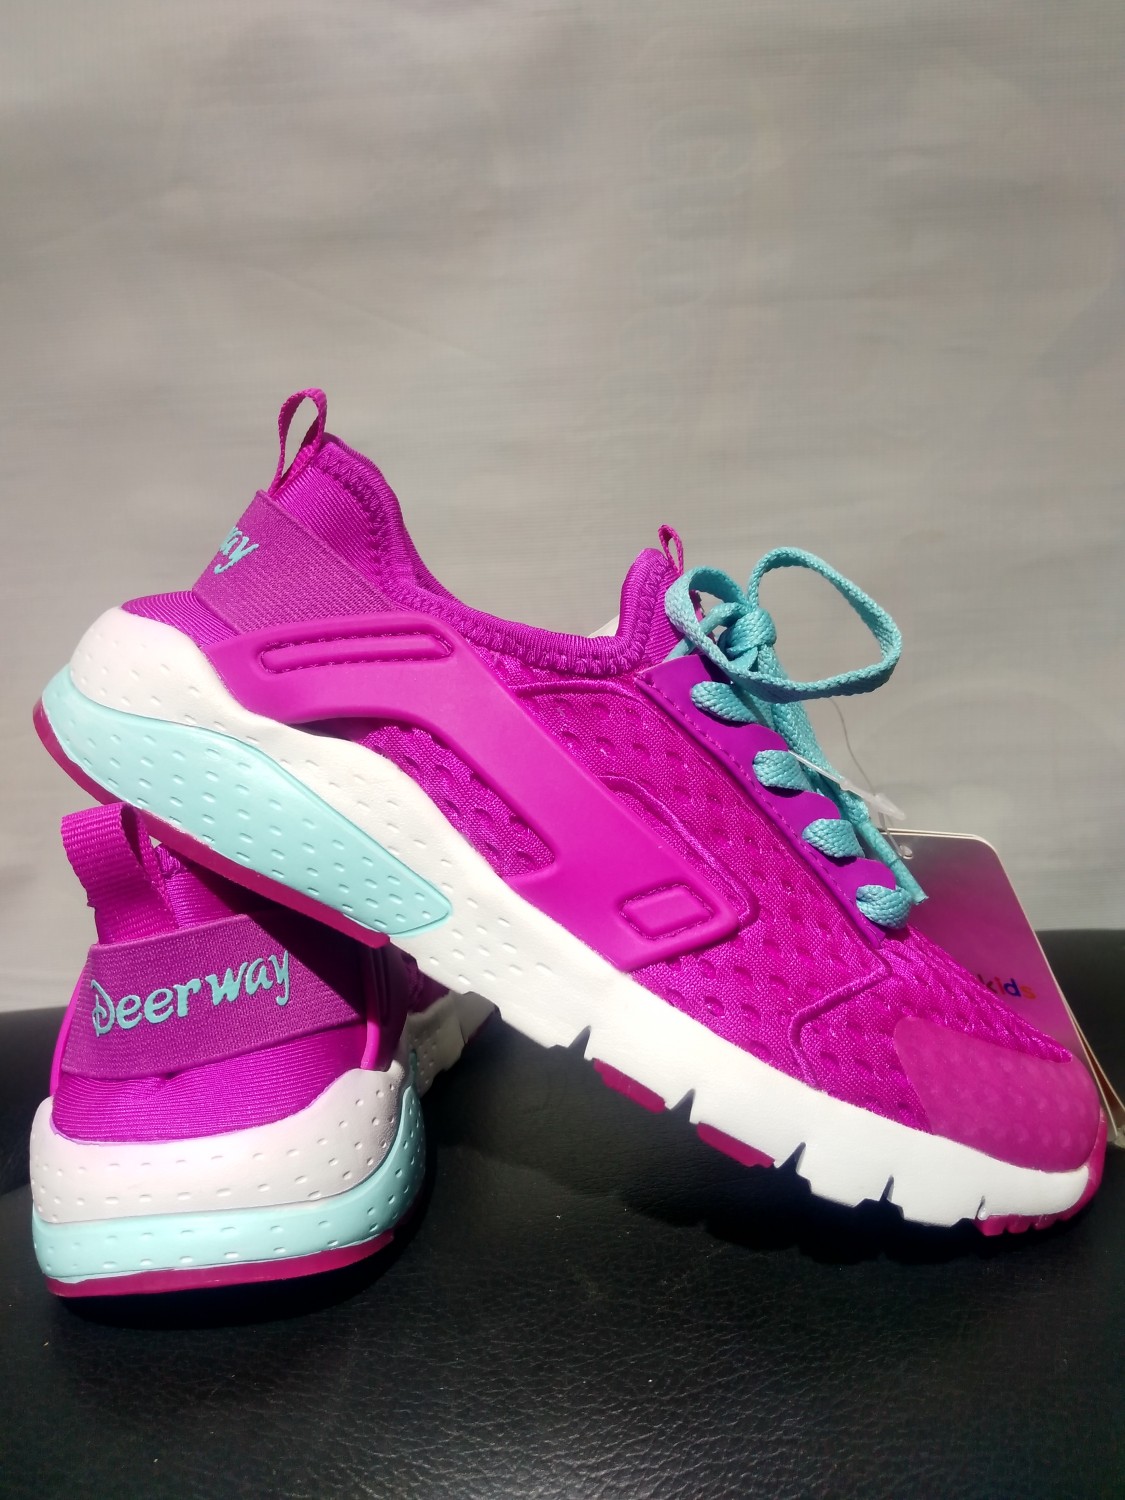 Buy Sport Shoes Online In Nepal Deerway For Kids